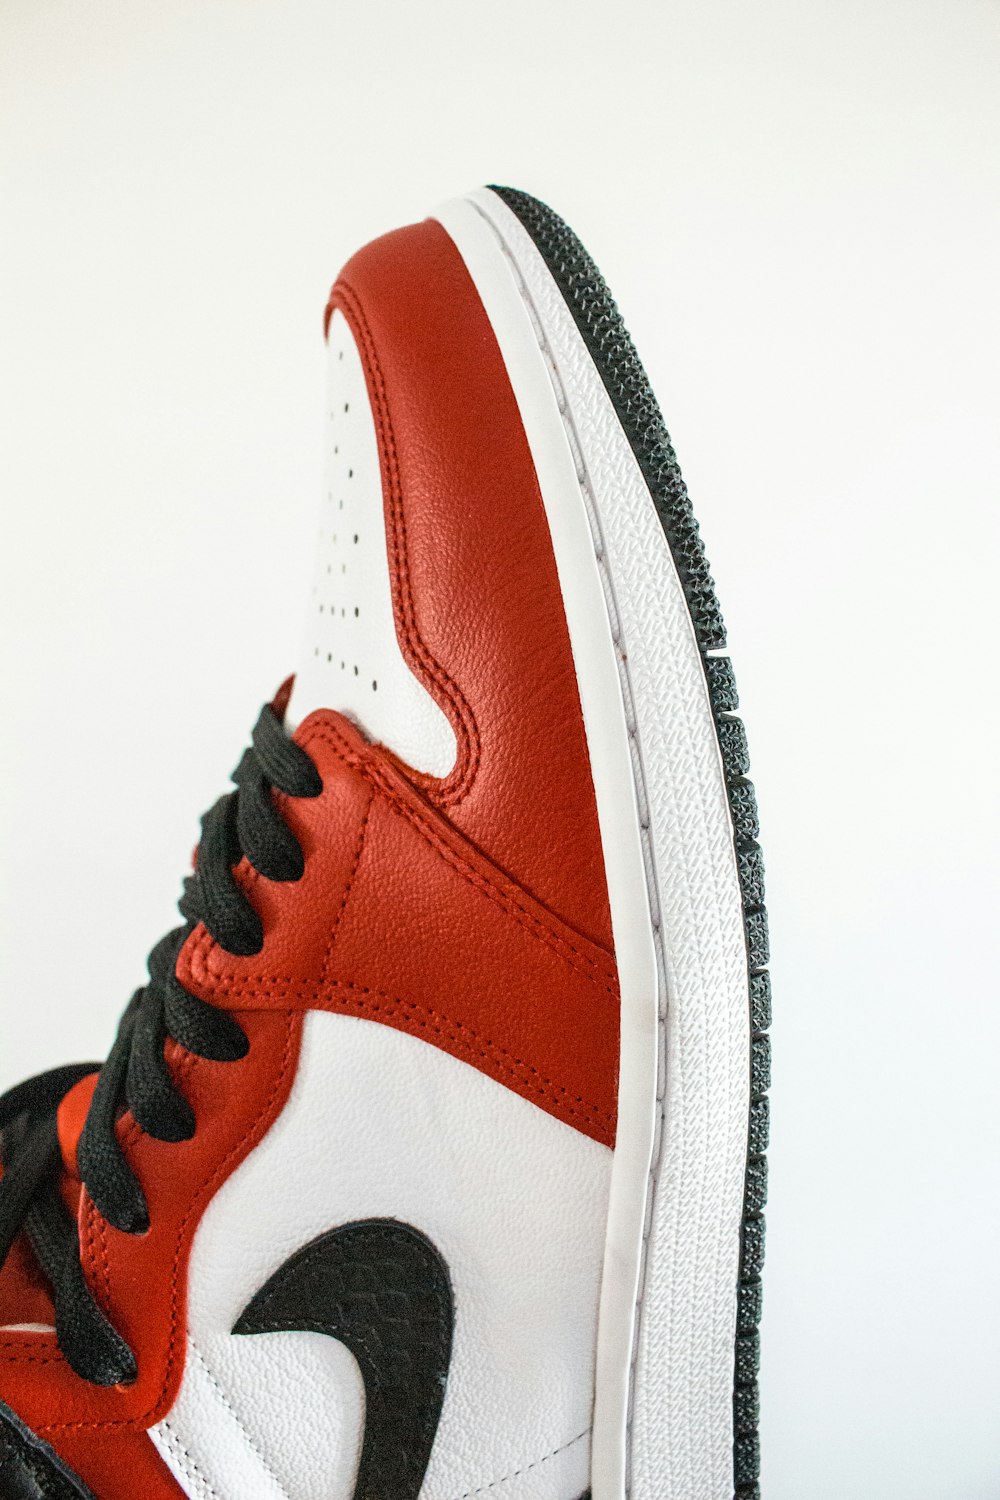 Zapatillas nike rojas y – Imagen gratis Unsplash